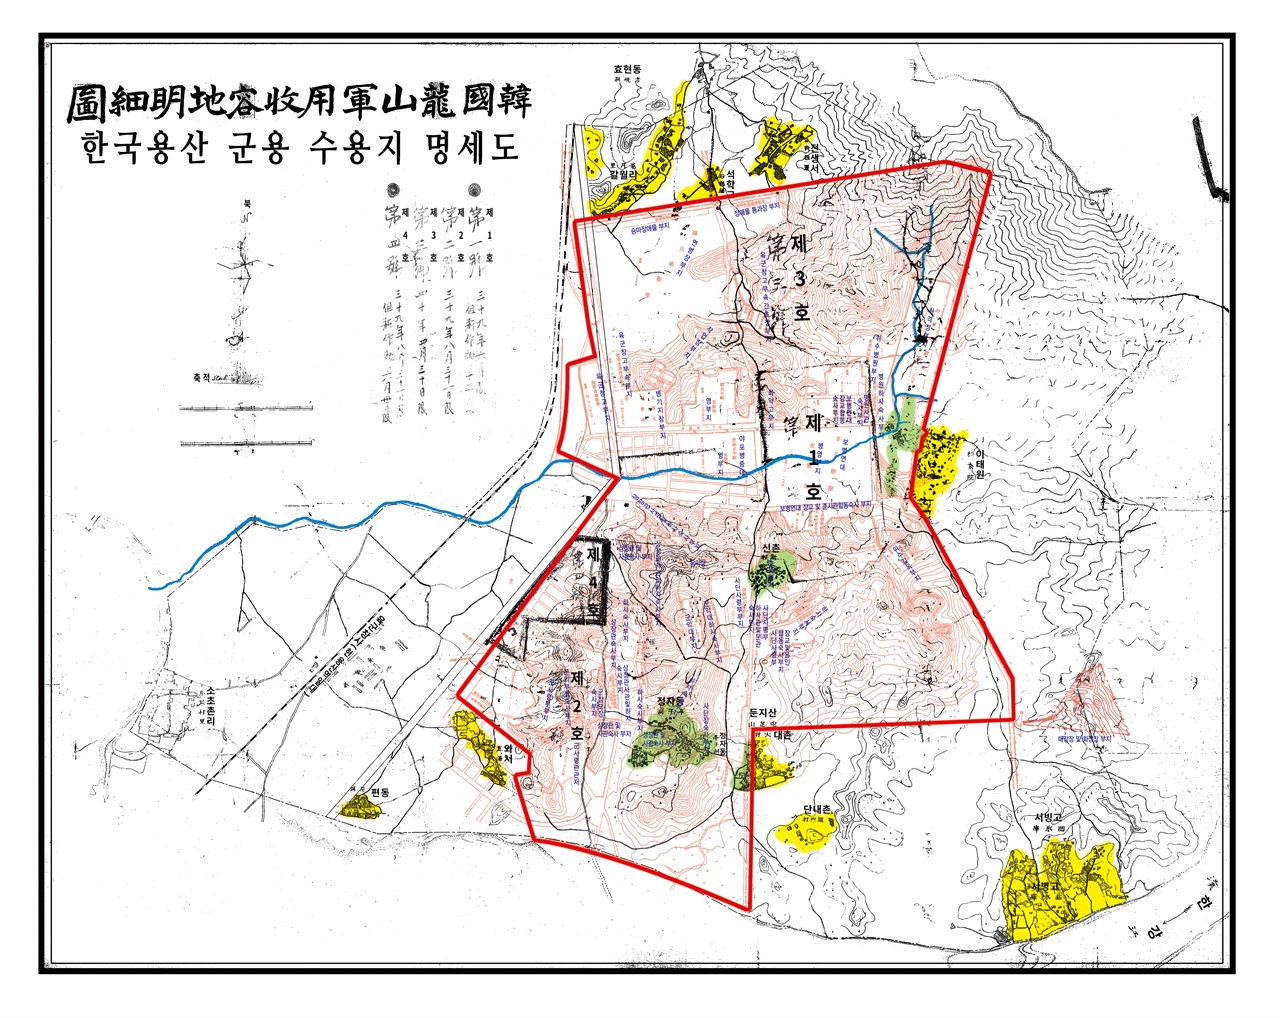 한국용산군용수용지명세도. 용산기지 조성 후 사라진 마을이 녹색으로 표시되어 있다.